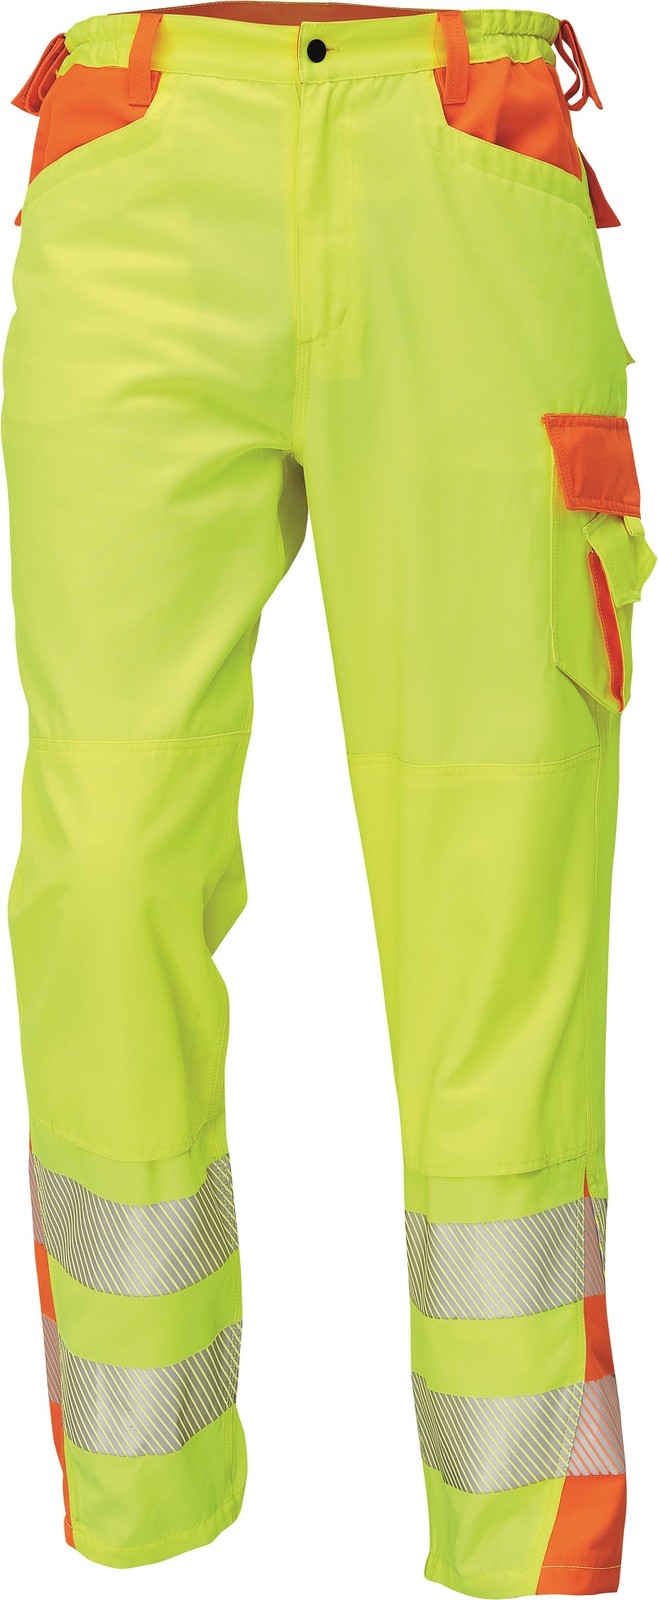 Reflexné pracovné nohavice Cerva Latton - veľkosť: 50, farba: žltá/oranžová